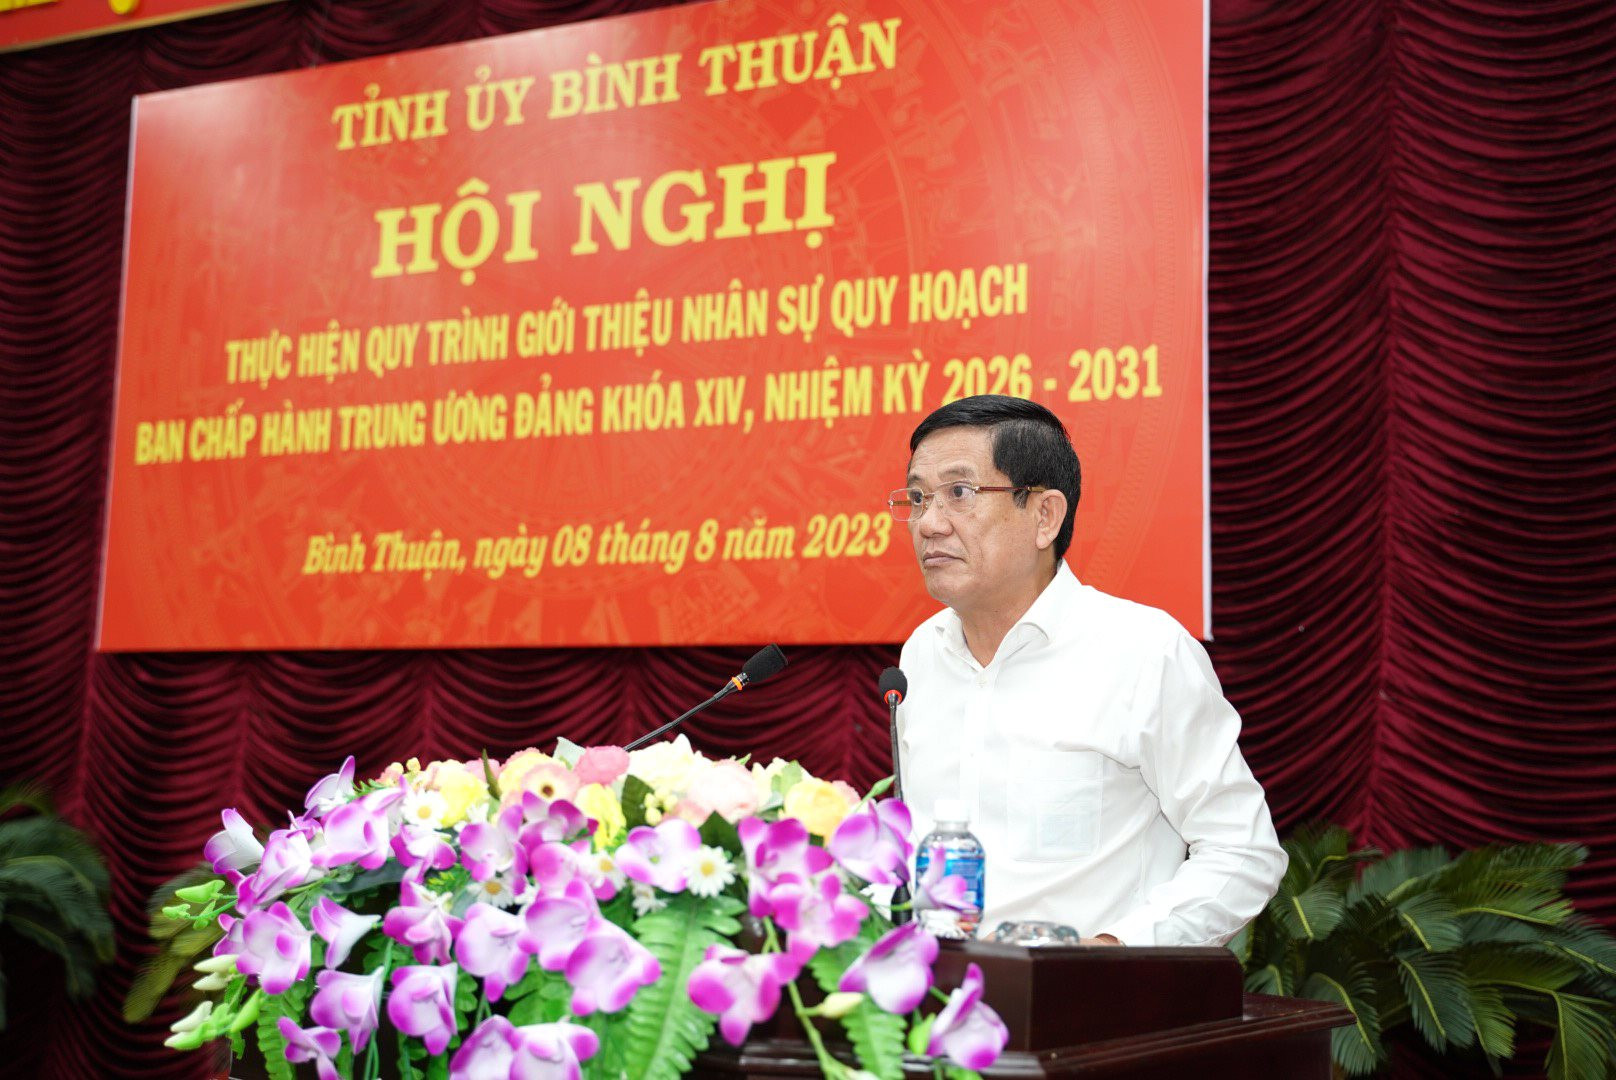 Bình Thuận giới thiệu nhân sự quy hoạch Ủy viên BCH Trung ương, khóa XIV - Ảnh 2.